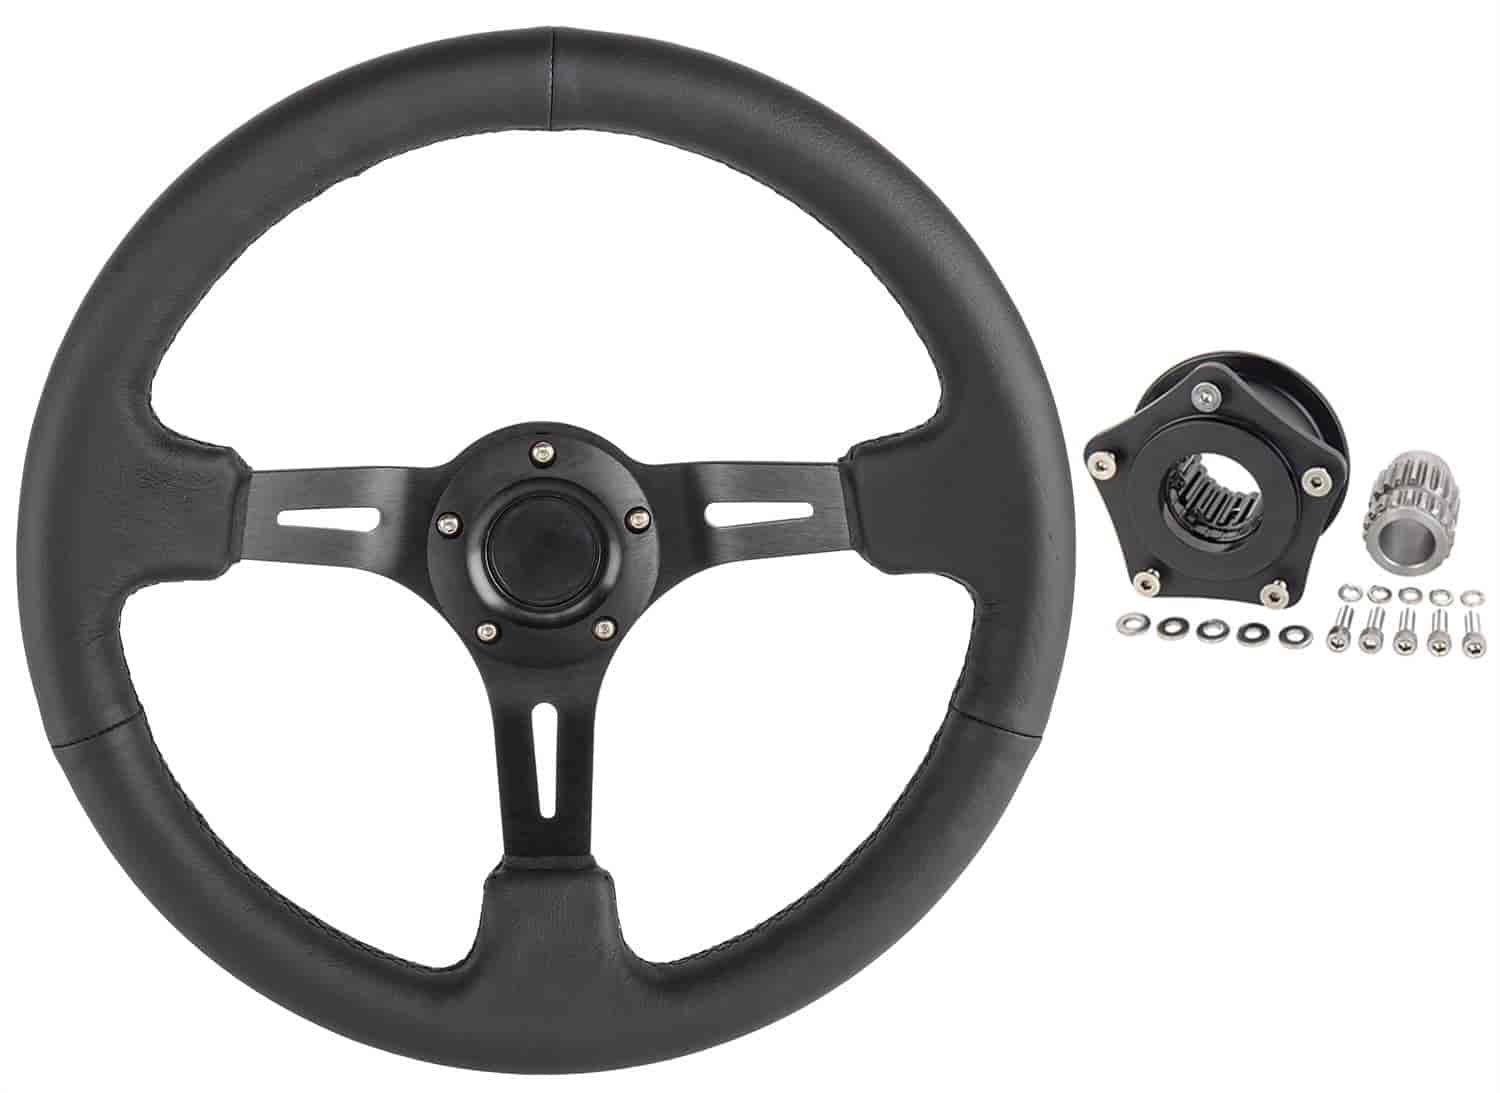 Racing Steering Wheel Kit